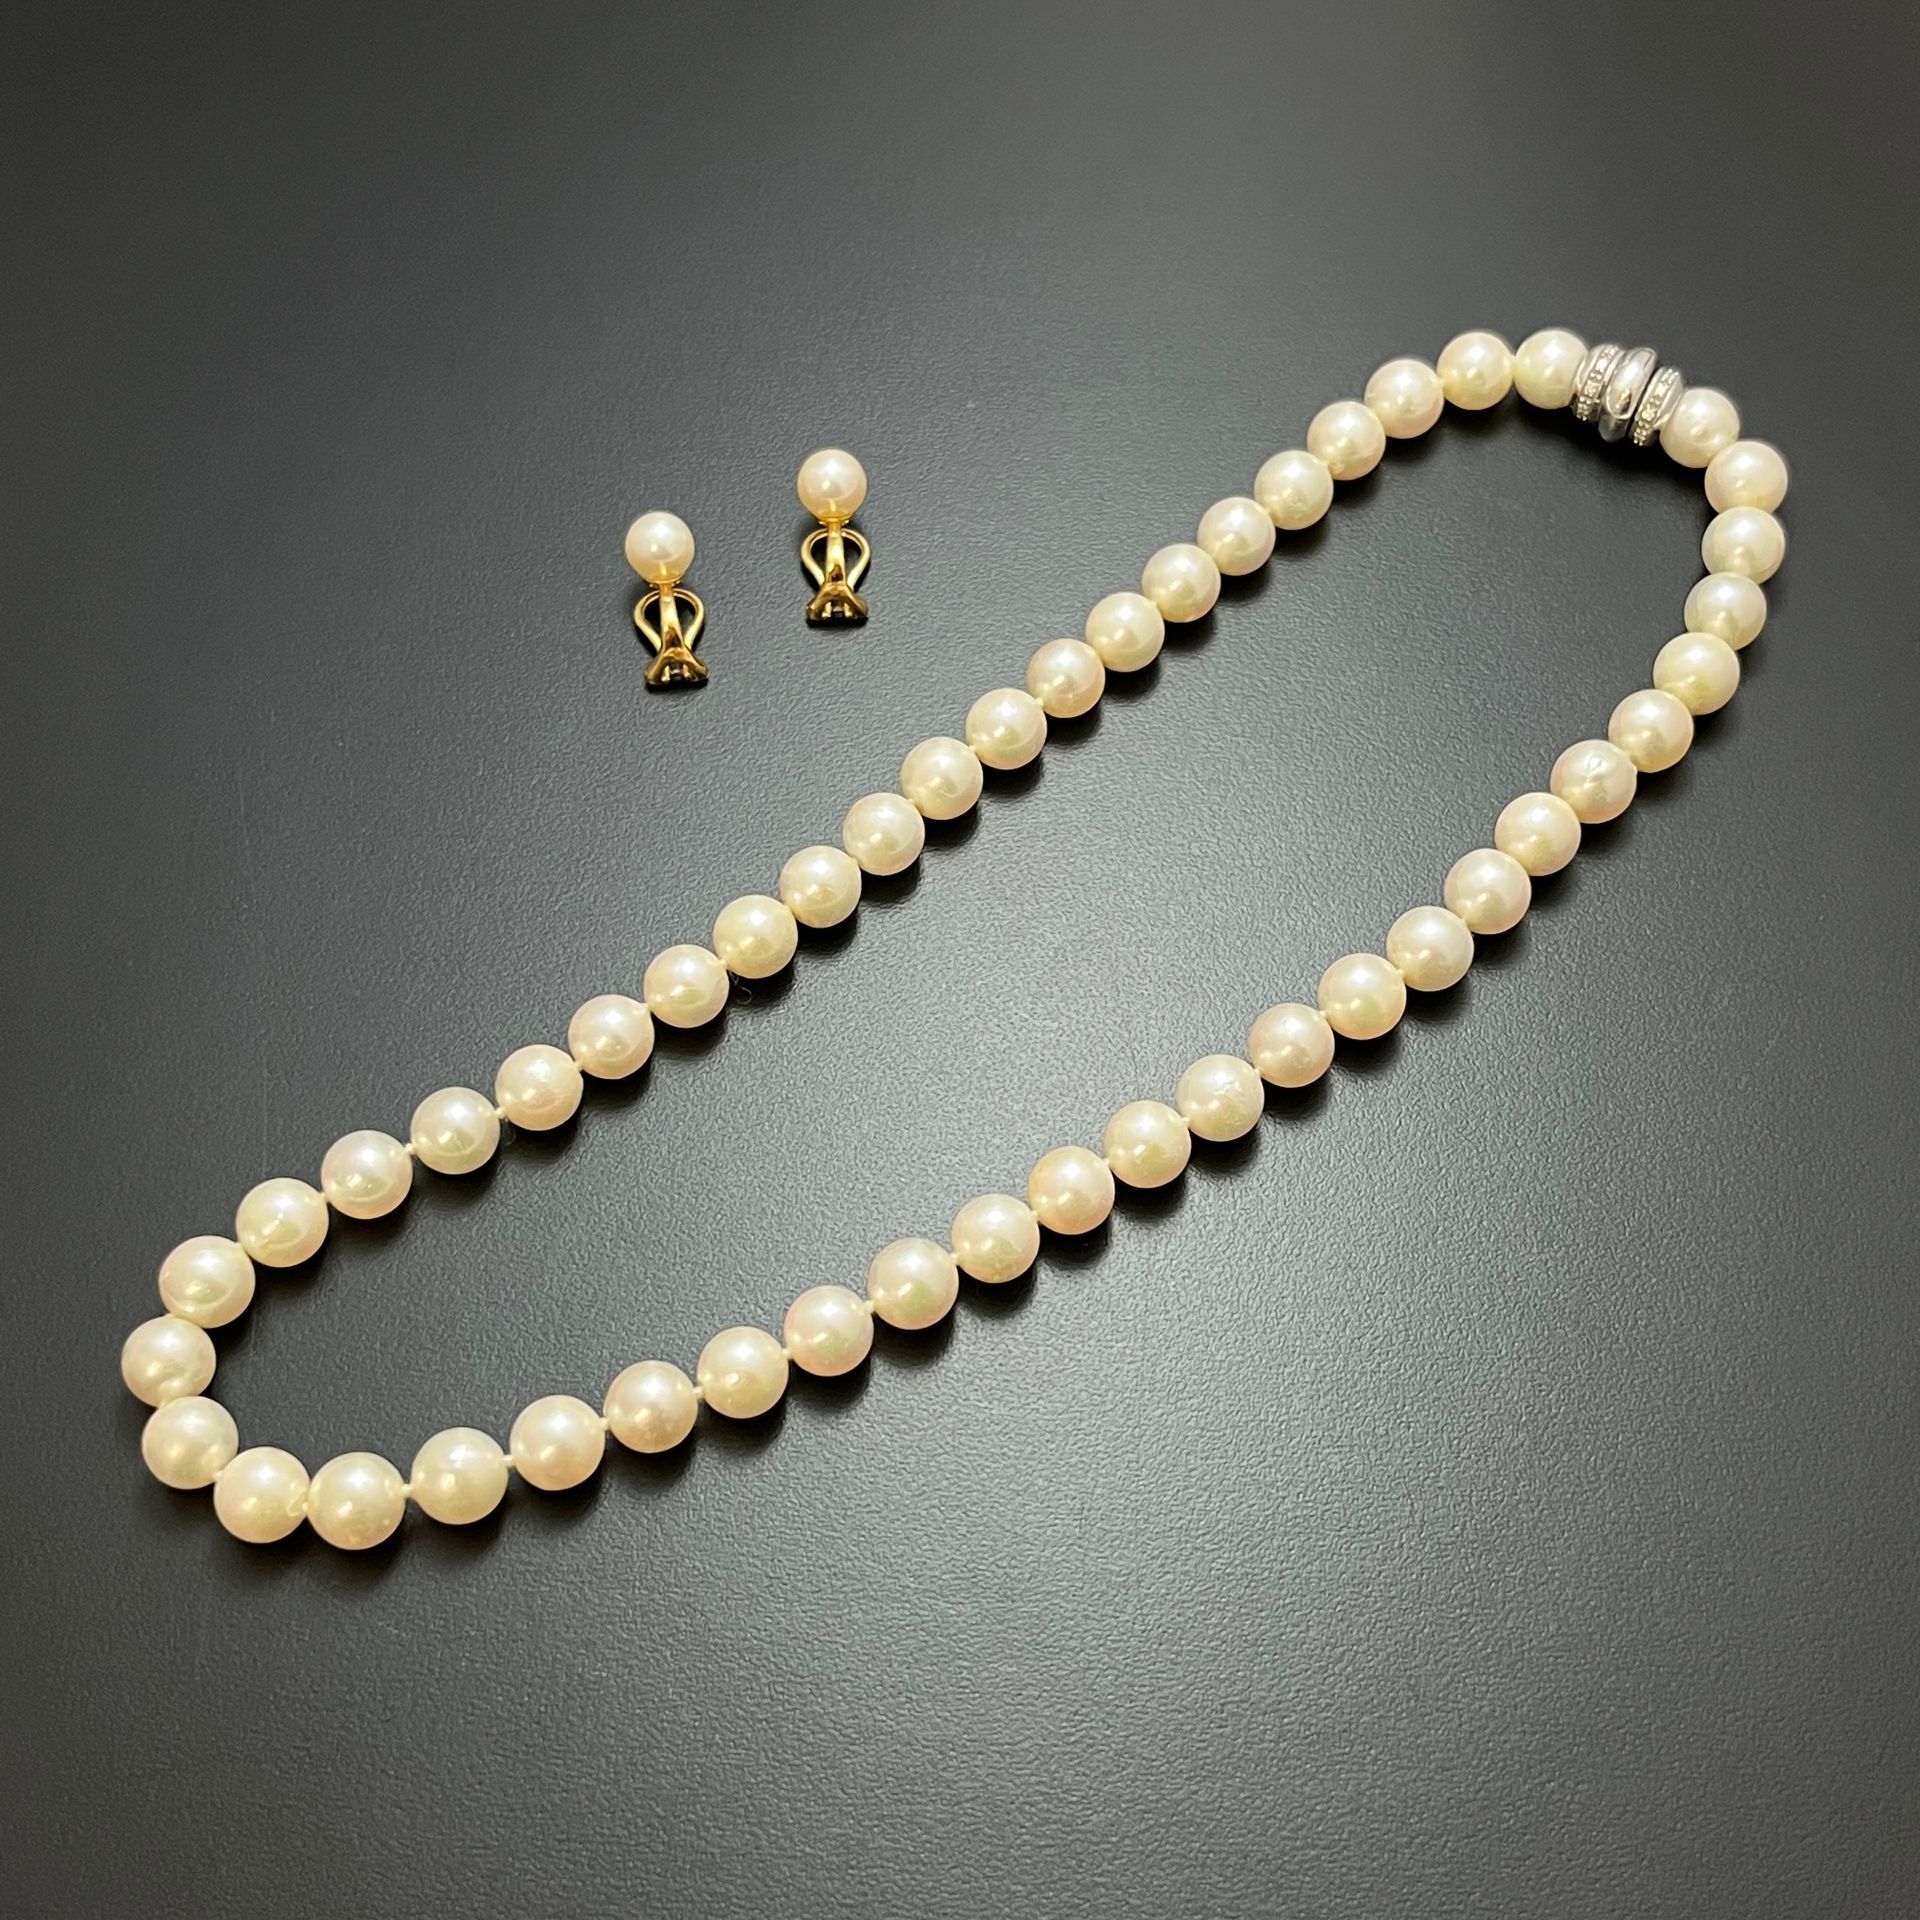 Null engaste en oro de 750 mm compuesto por : 
- un collar de perlas cultivadas &hellip;